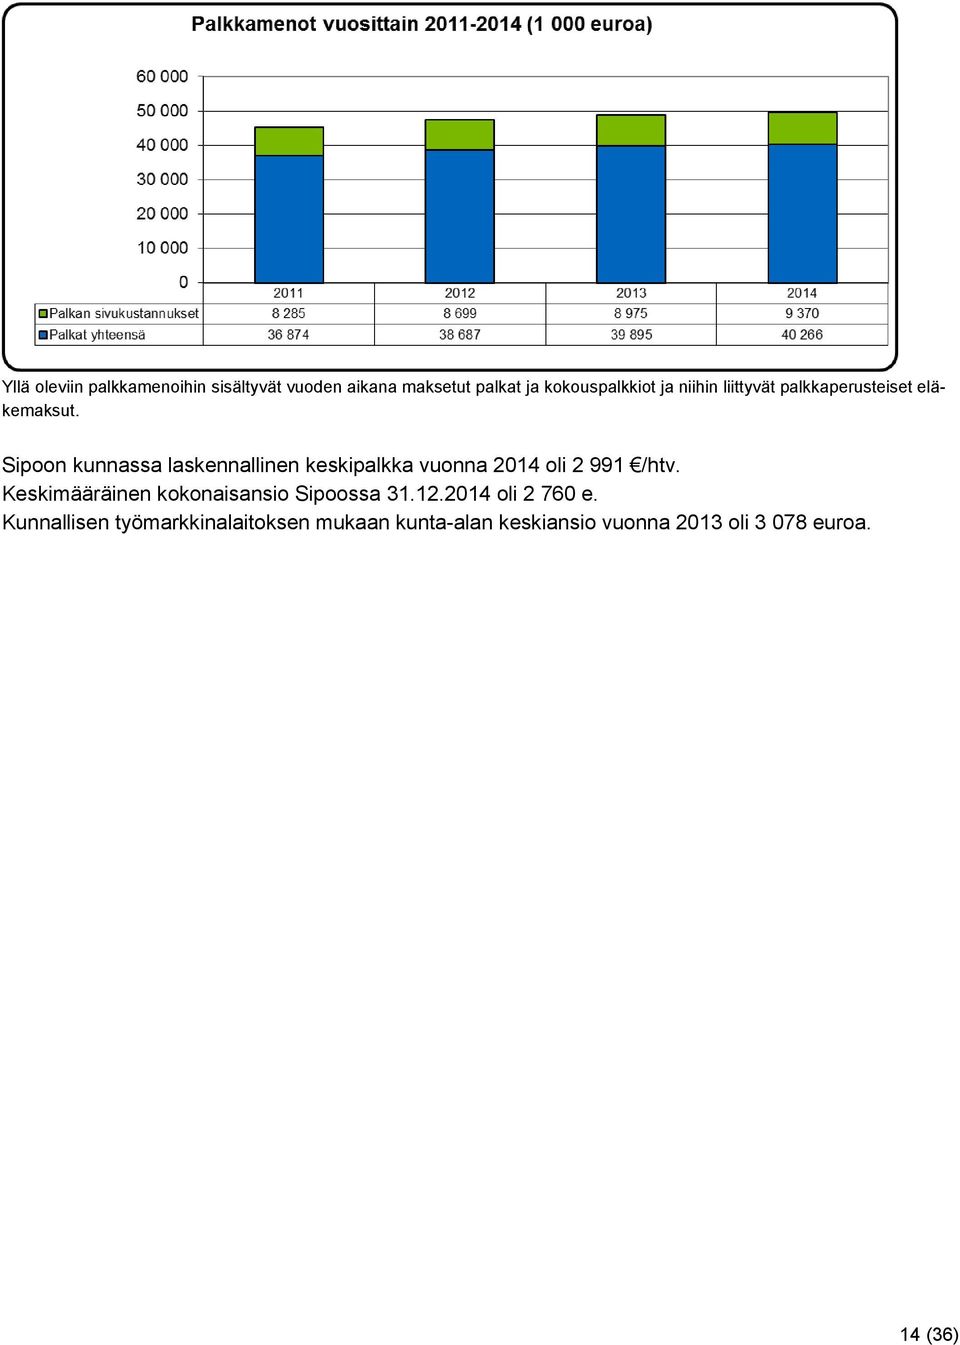 Sipoon kunnassa laskennallinen keskipalkka vuonna 2014 oli 2 991 /htv.